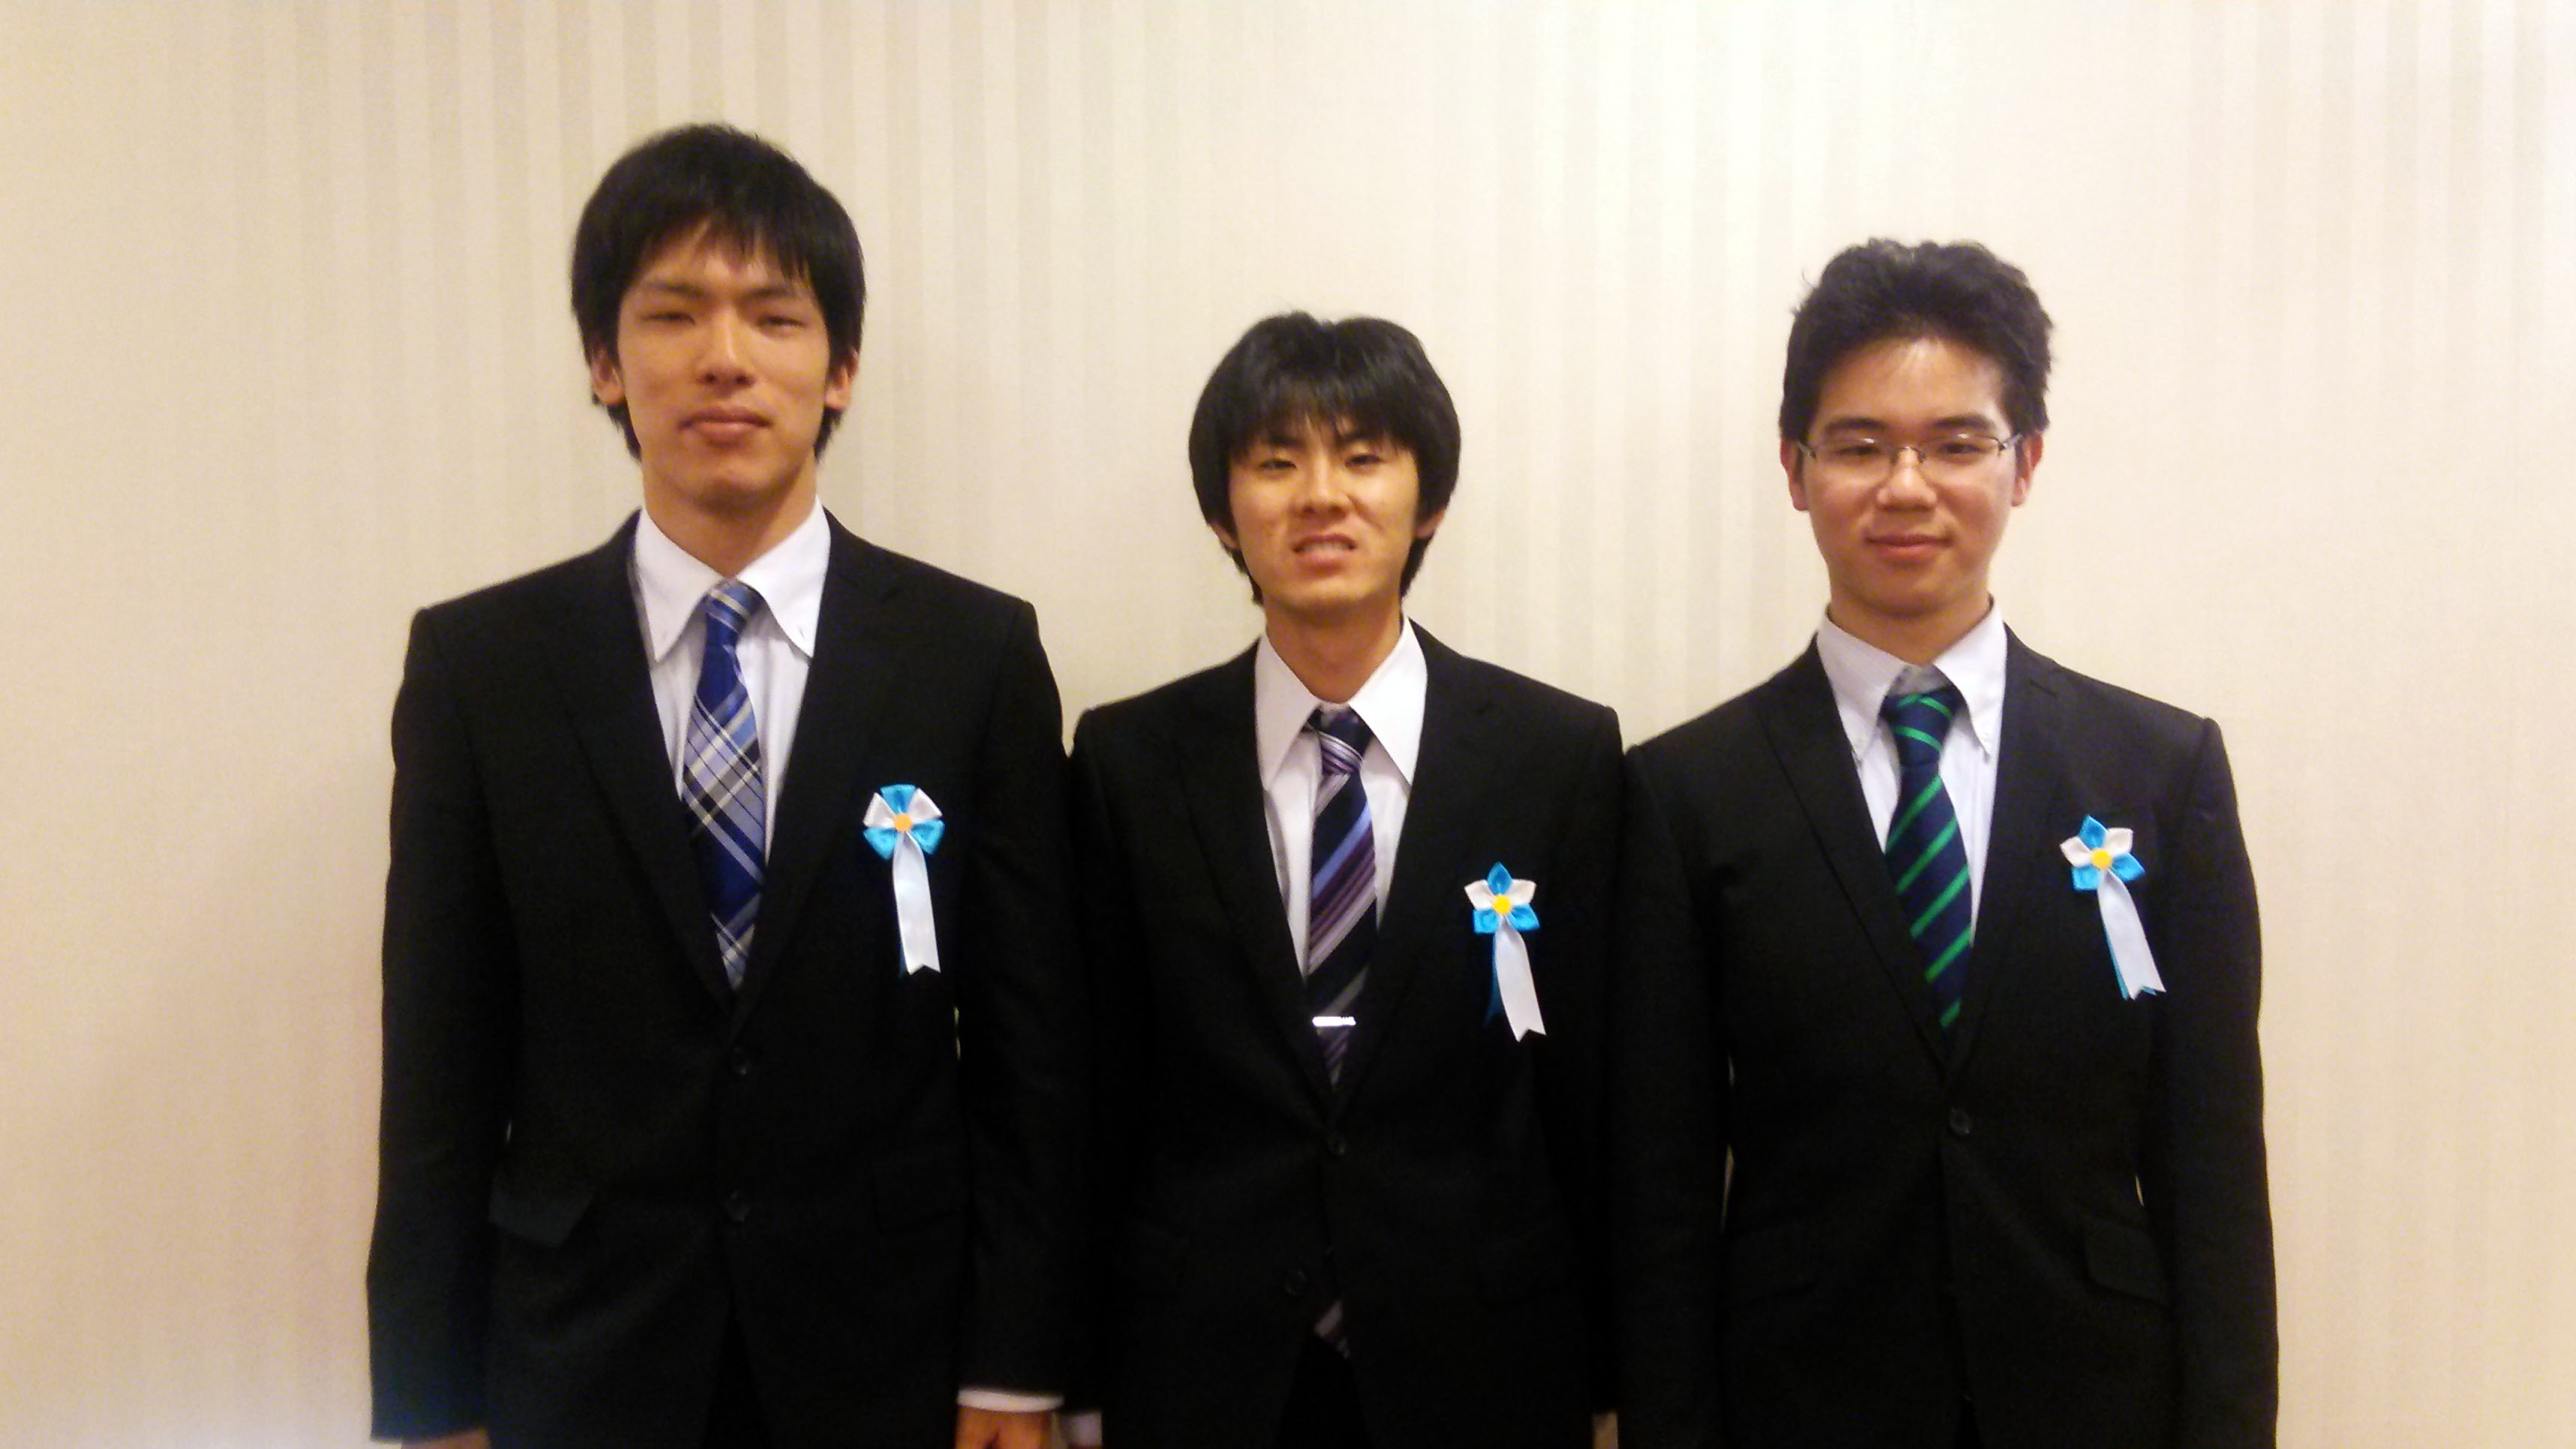 ツネイシパートナーズ賞を受賞した、岡山大学大学院・齊藤塁さん、濱野友希豊さん、後藤剛さん